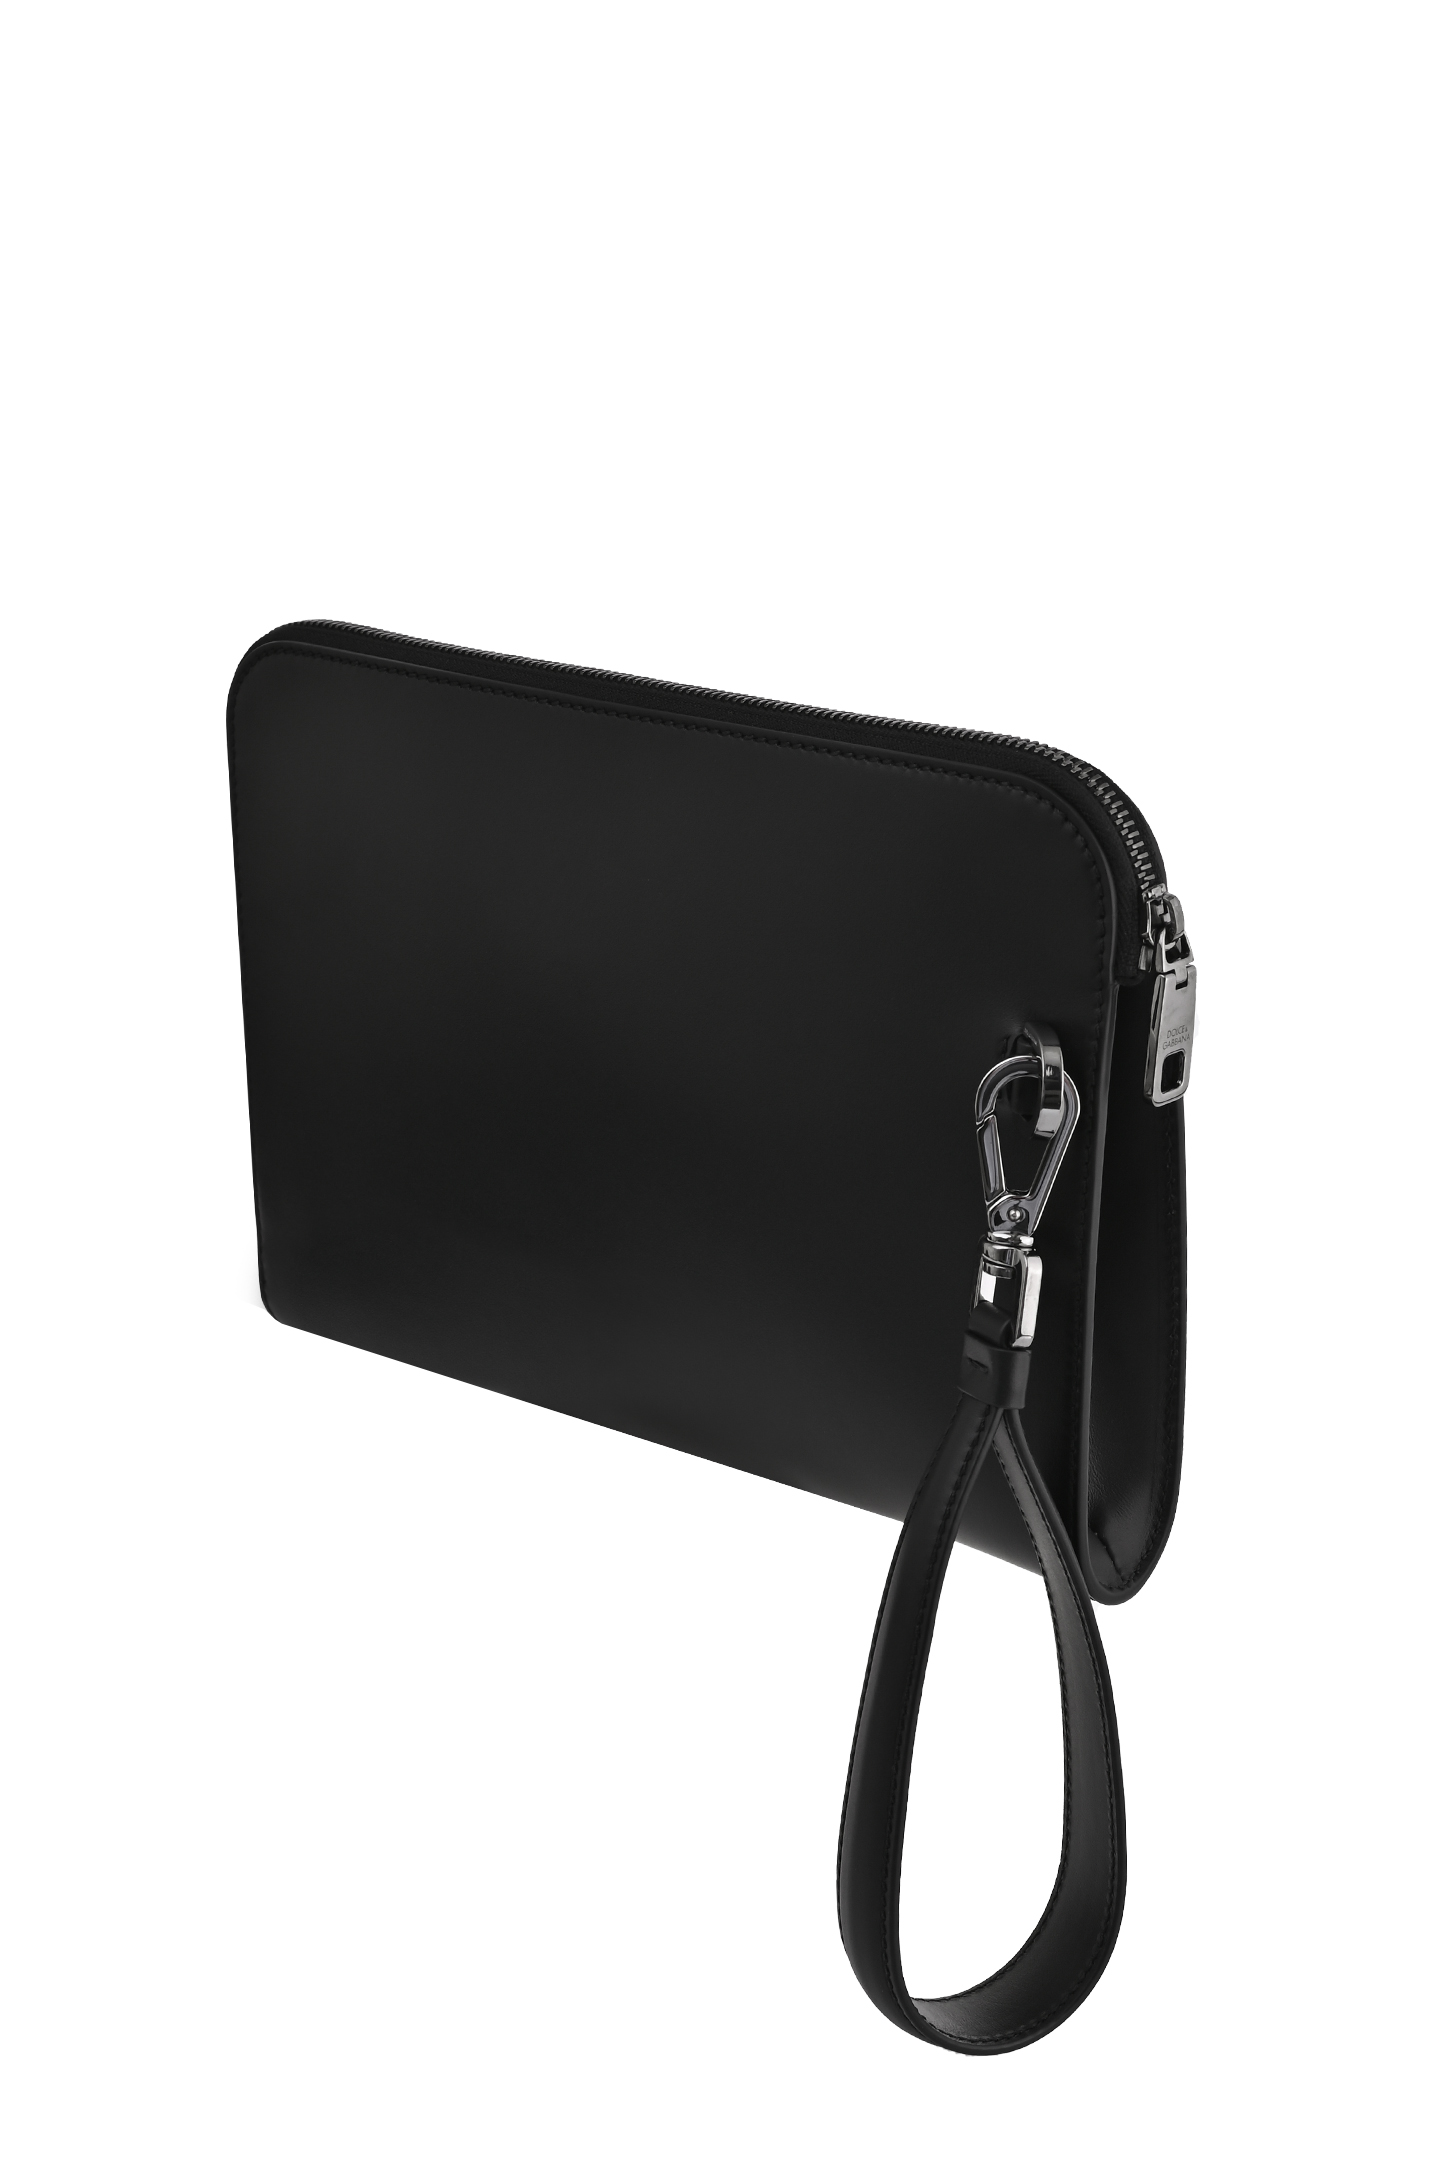 Кожаный клатч DOLCE & GABBANA BM1751 AG218, цвет: Черный, Мужской